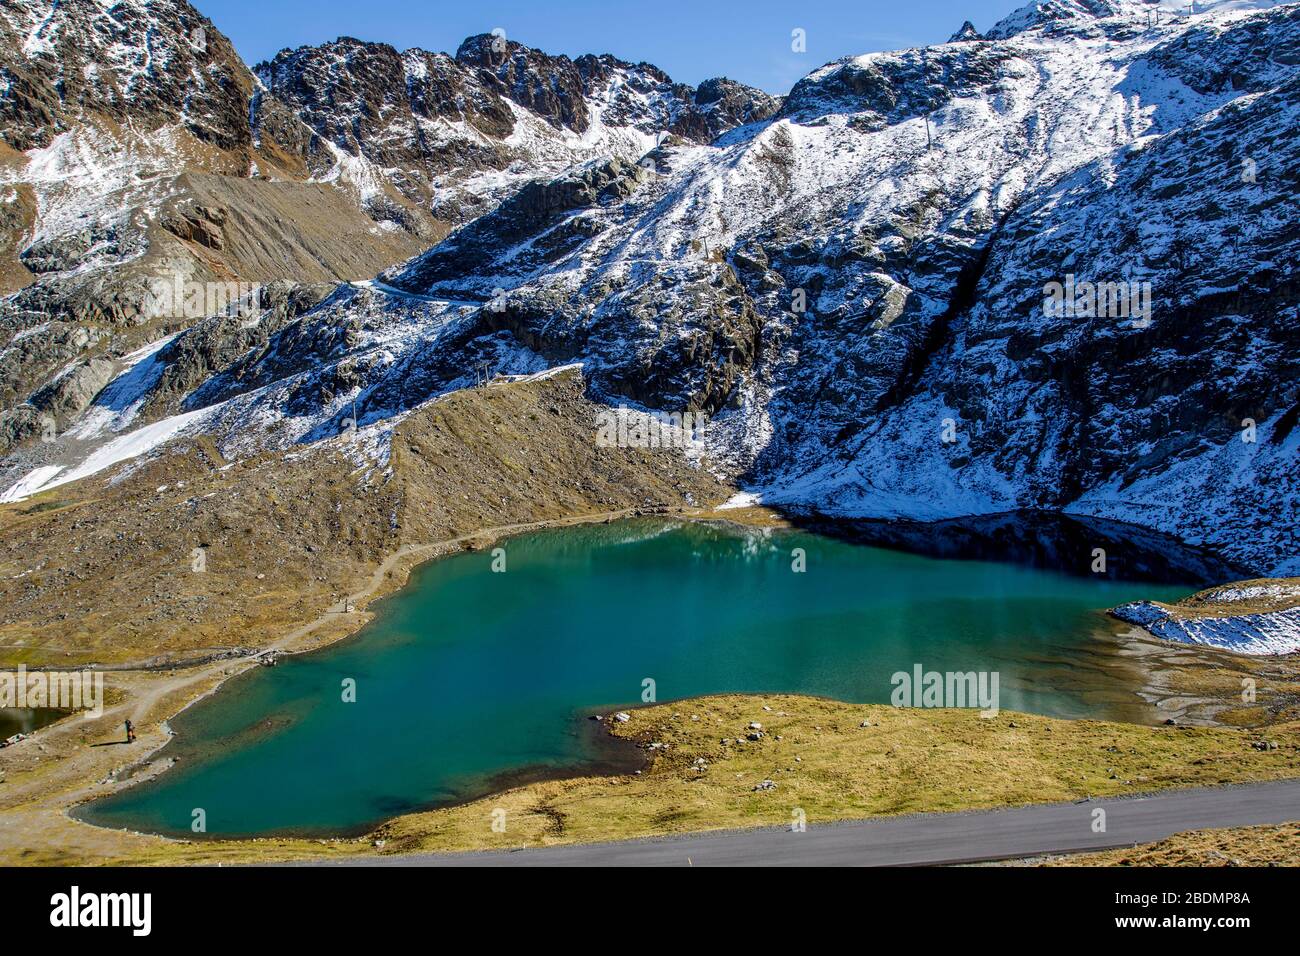 Weißsee, Gletschersee, Kaunertalgletscher, Tirolo, Österreich Foto Stock